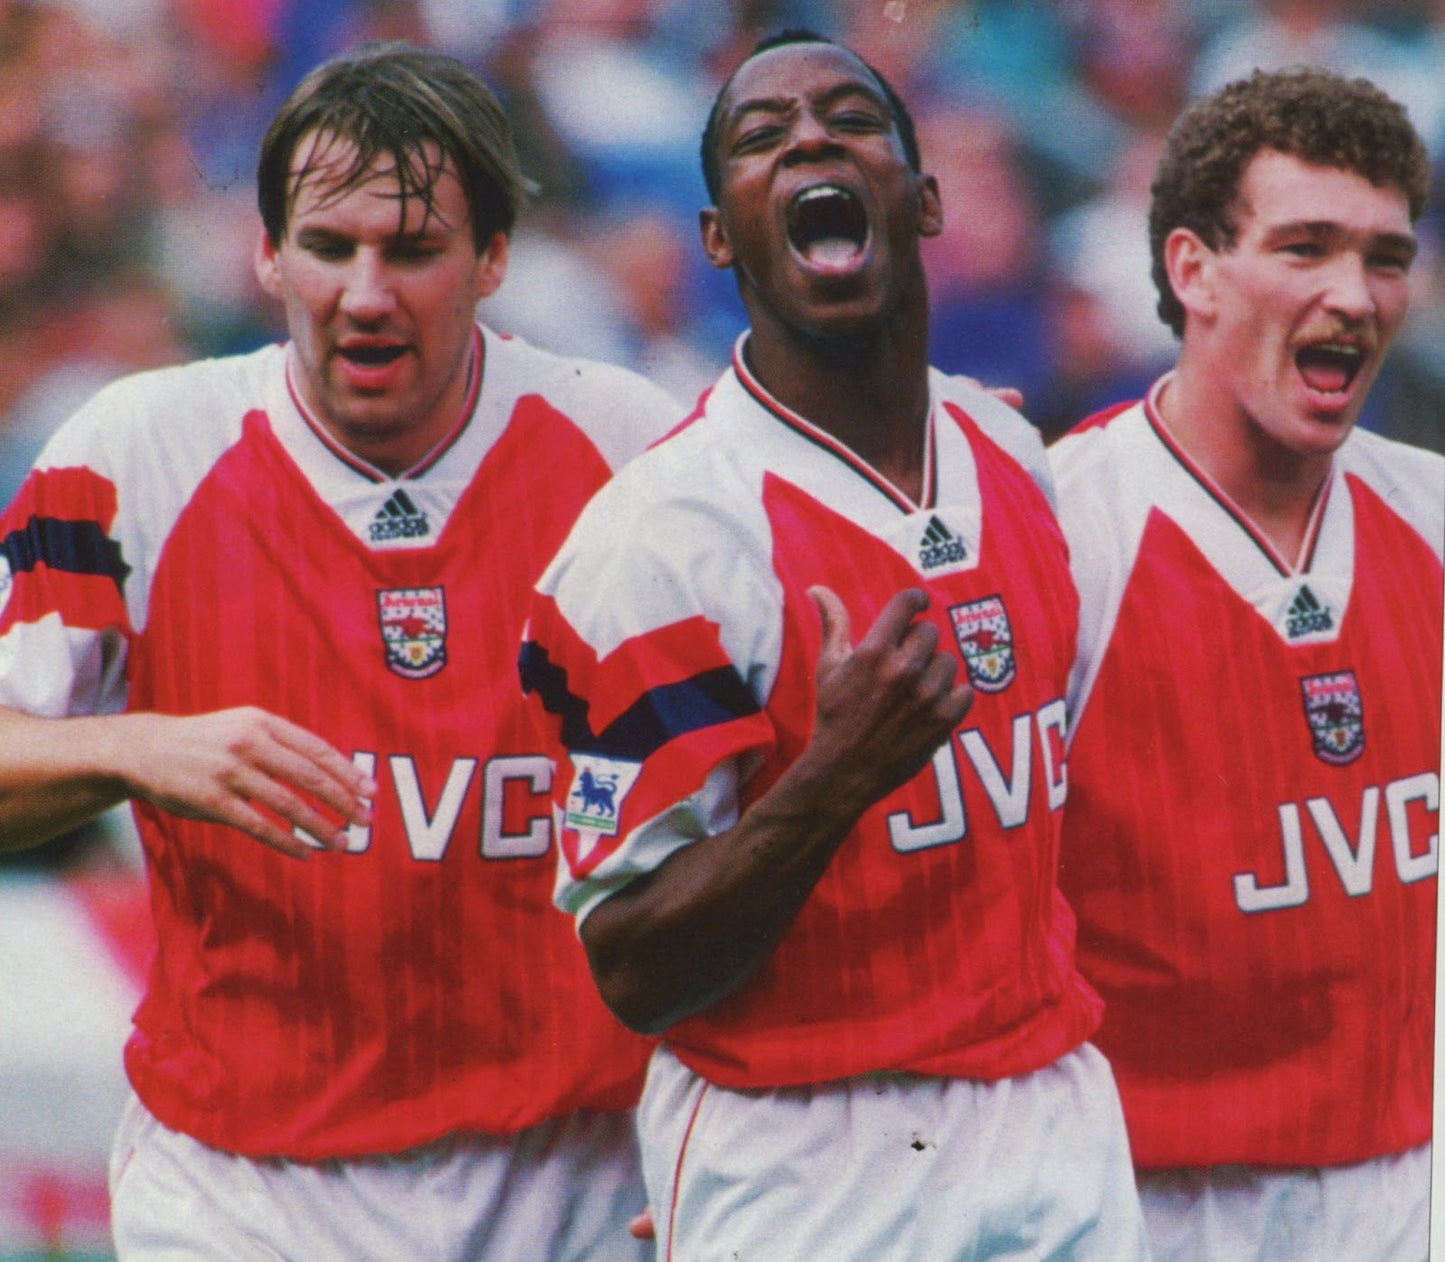 Arsenal 1992/94 Home Shirt